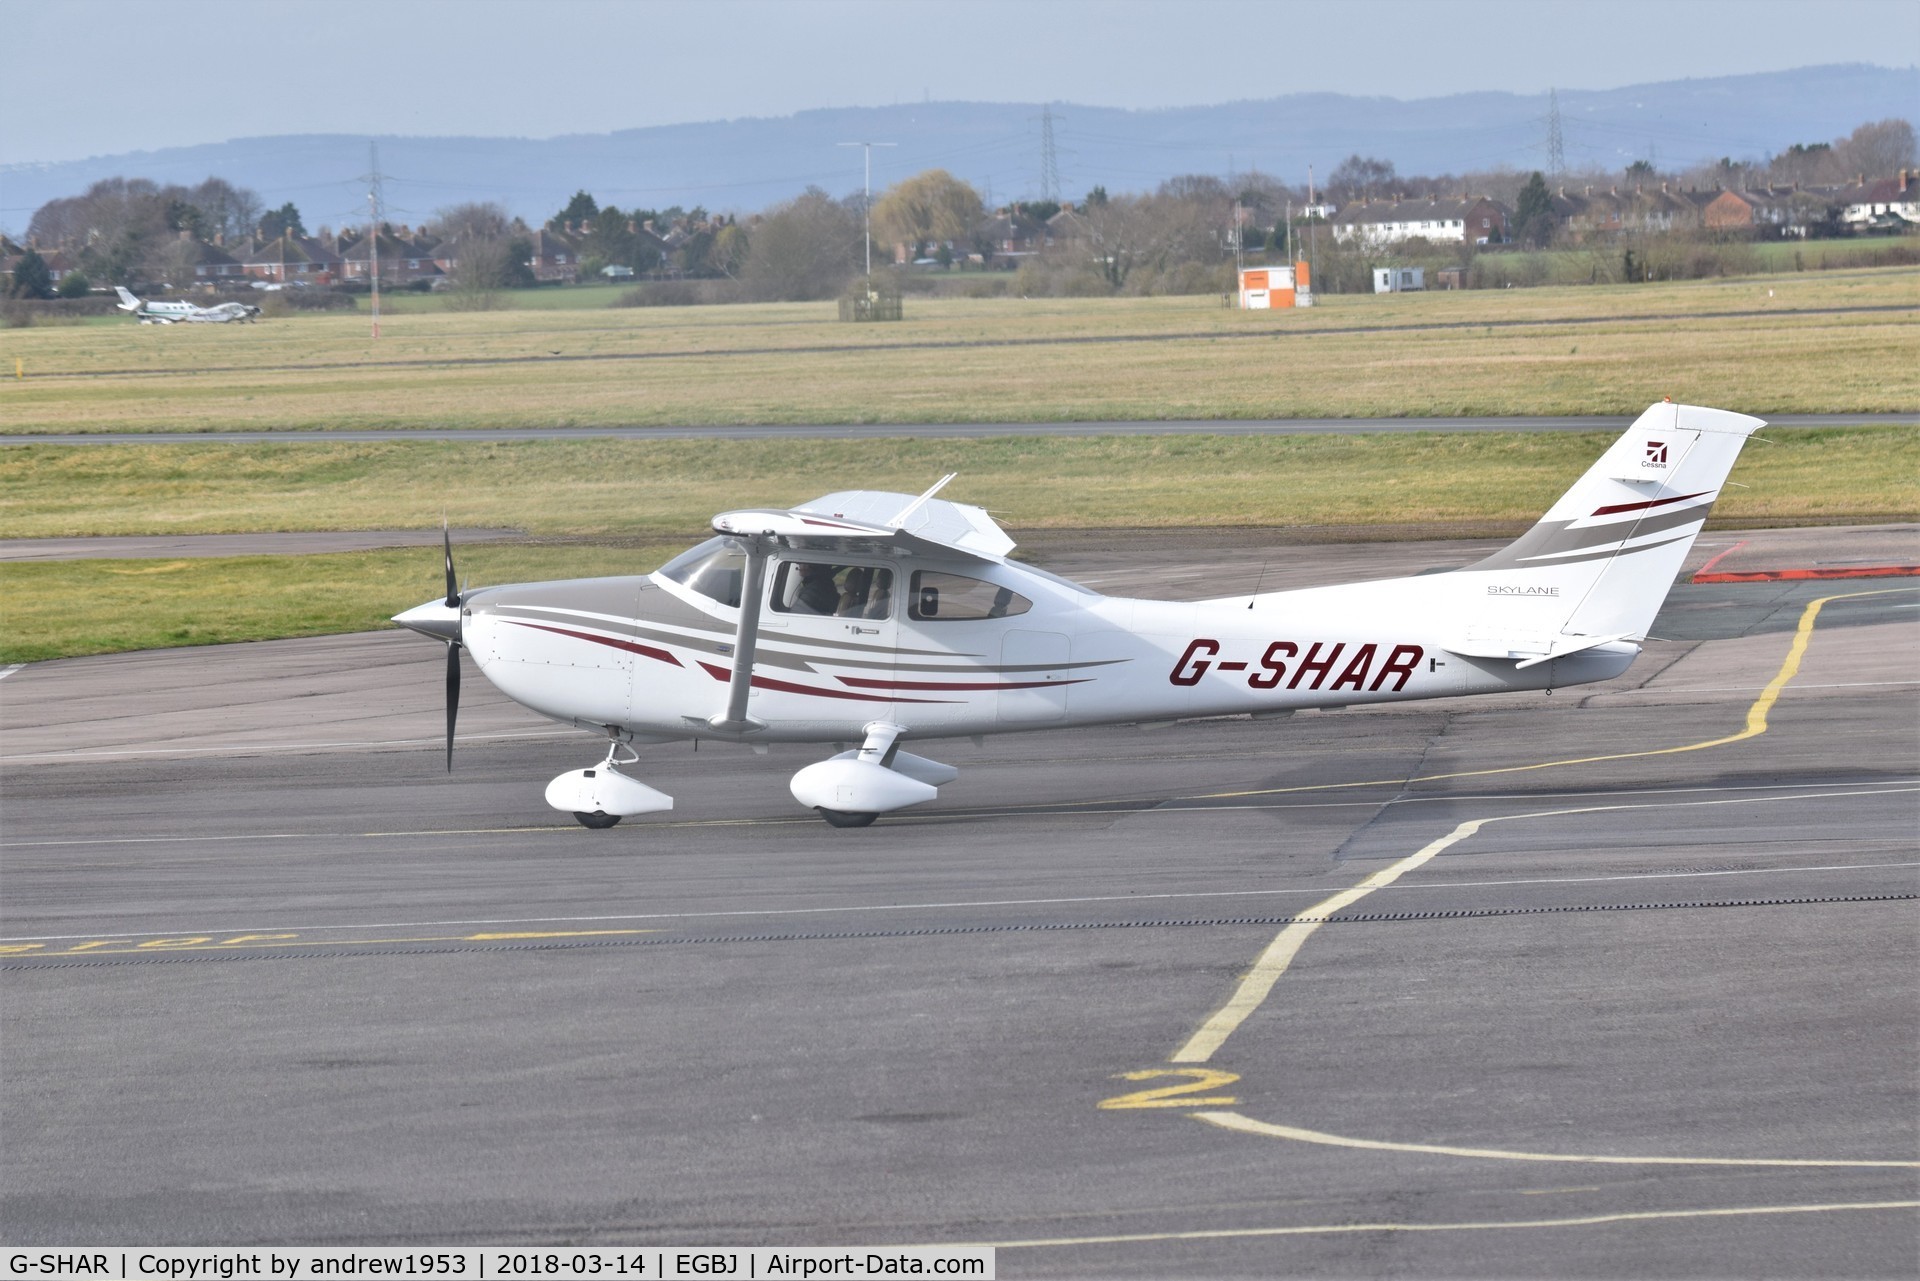 G-SHAR, 2005 Cessna 182T Skylane C/N 18281636, G-SHAR at Gloucestershire Airport.